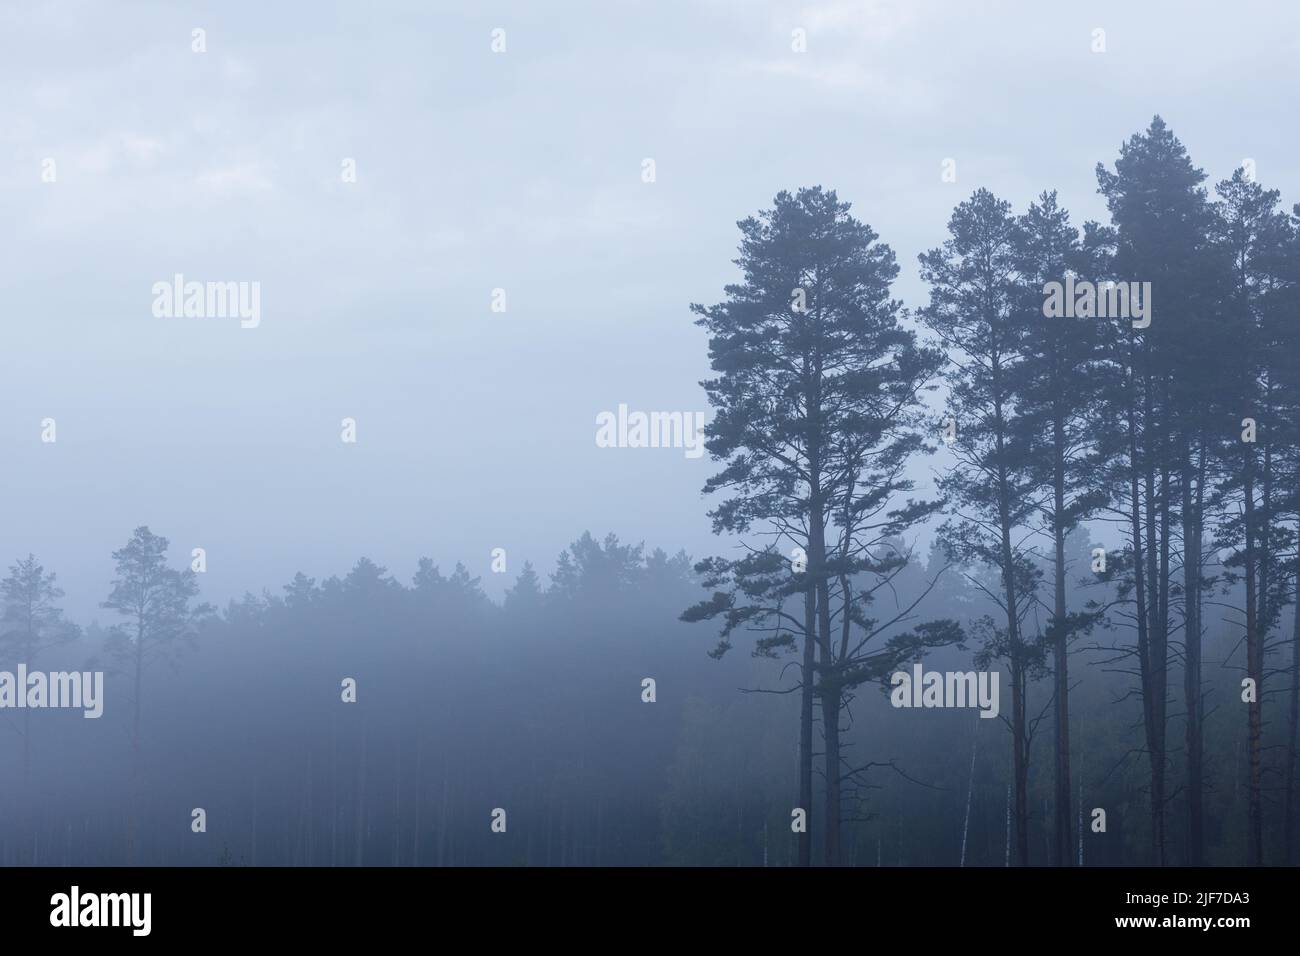 Forêt de pins mystère couverte de brouillard, paysage du matin Banque D'Images